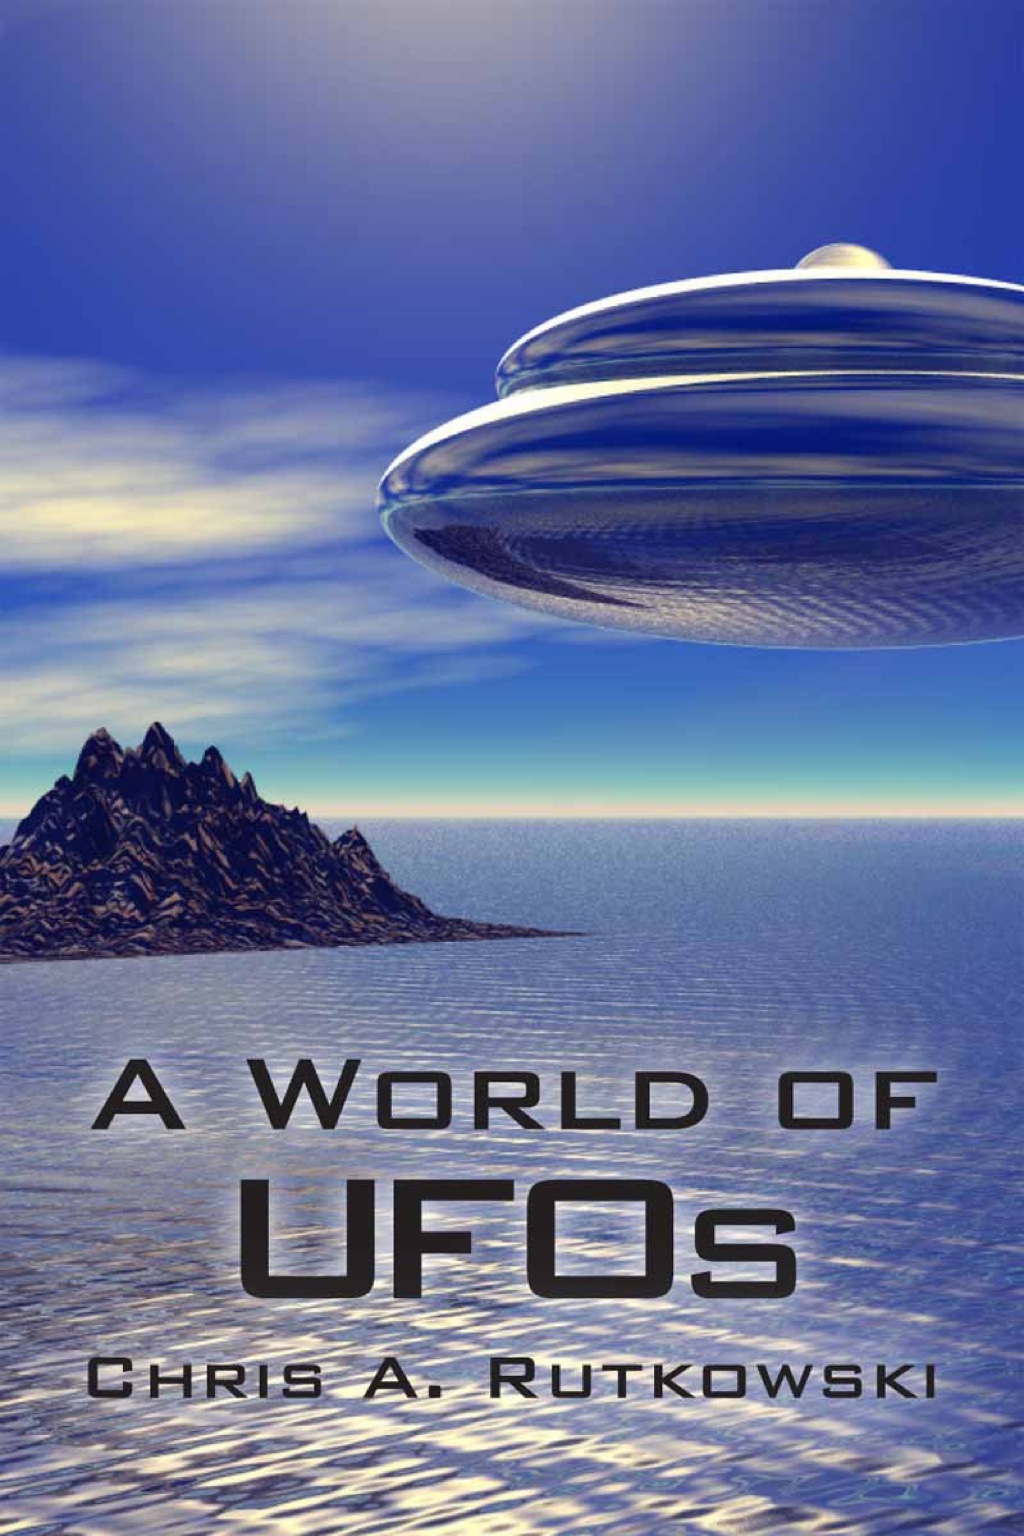 A World of UFOs (eBook) - Chris A. Rutkowski,